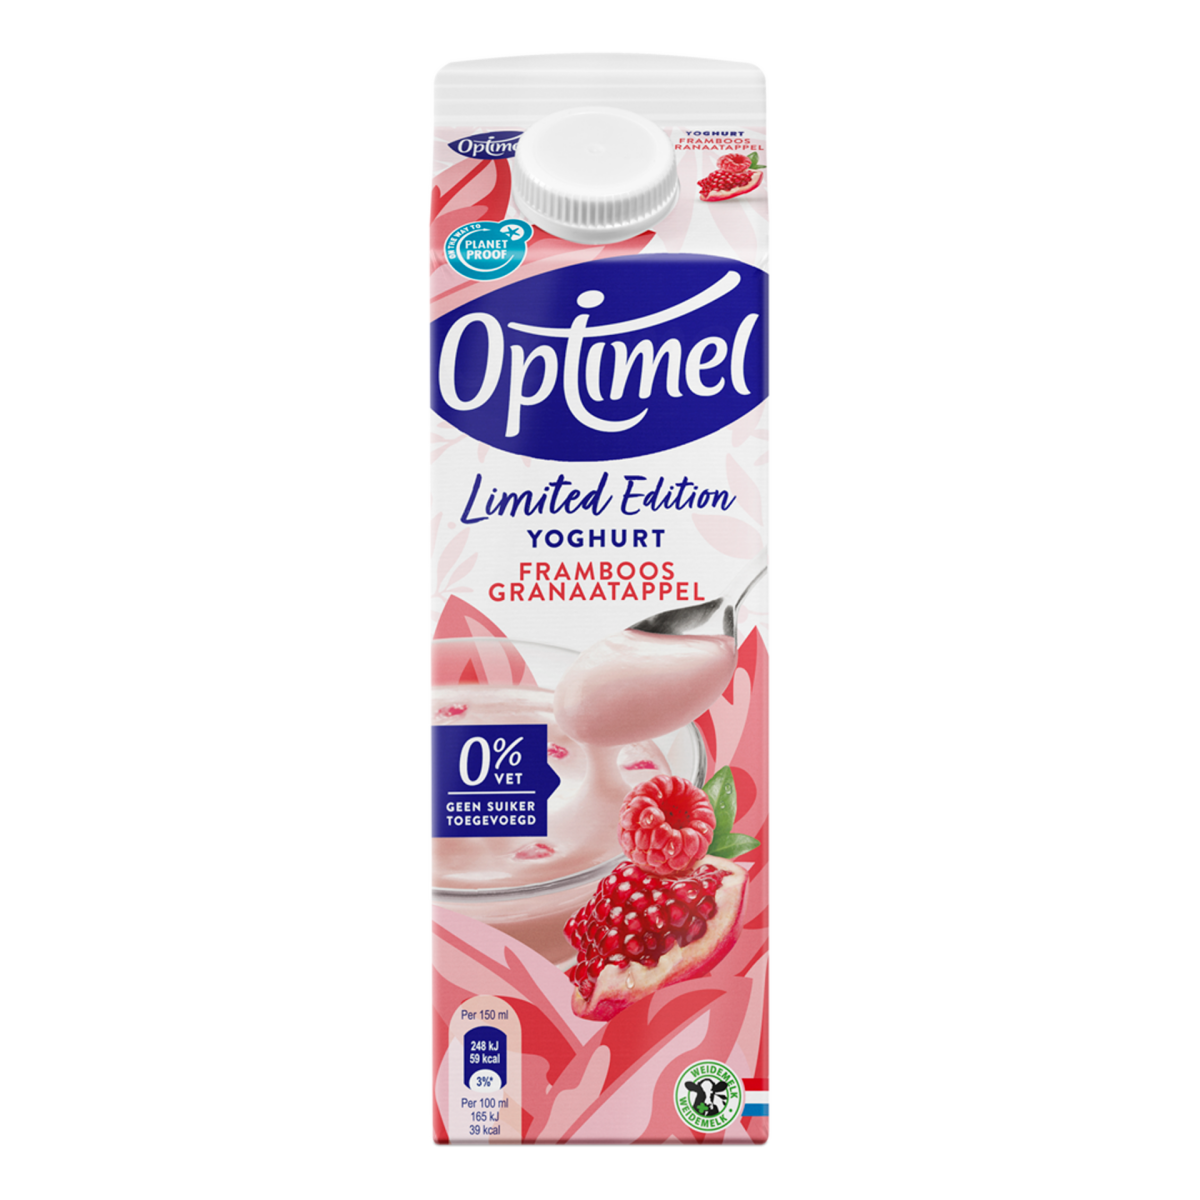 Optimel Magere yoghurt limited edition Framboos Granaatappel 0% vet 1L